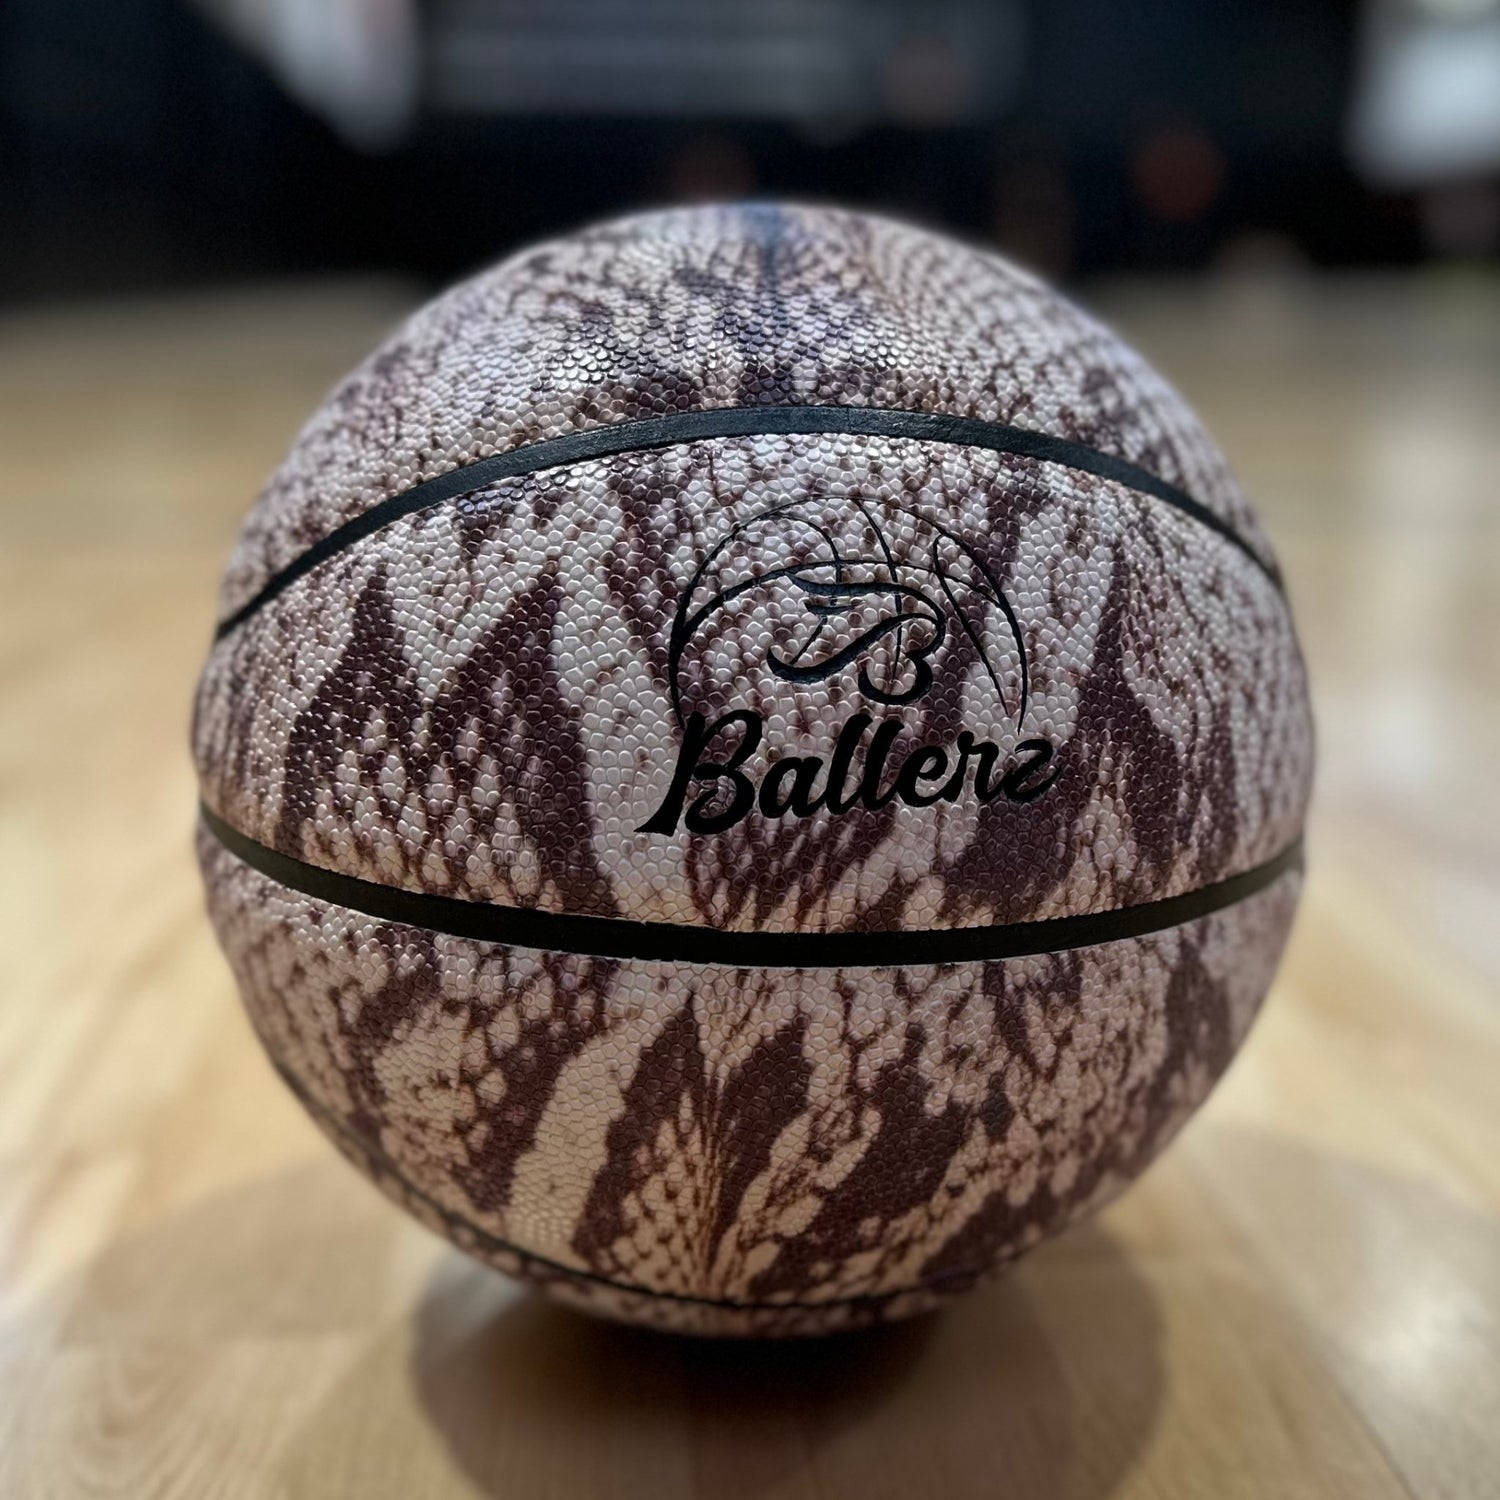 Très beau ballon de basket avec imprimé zèbre de la marque ballerz